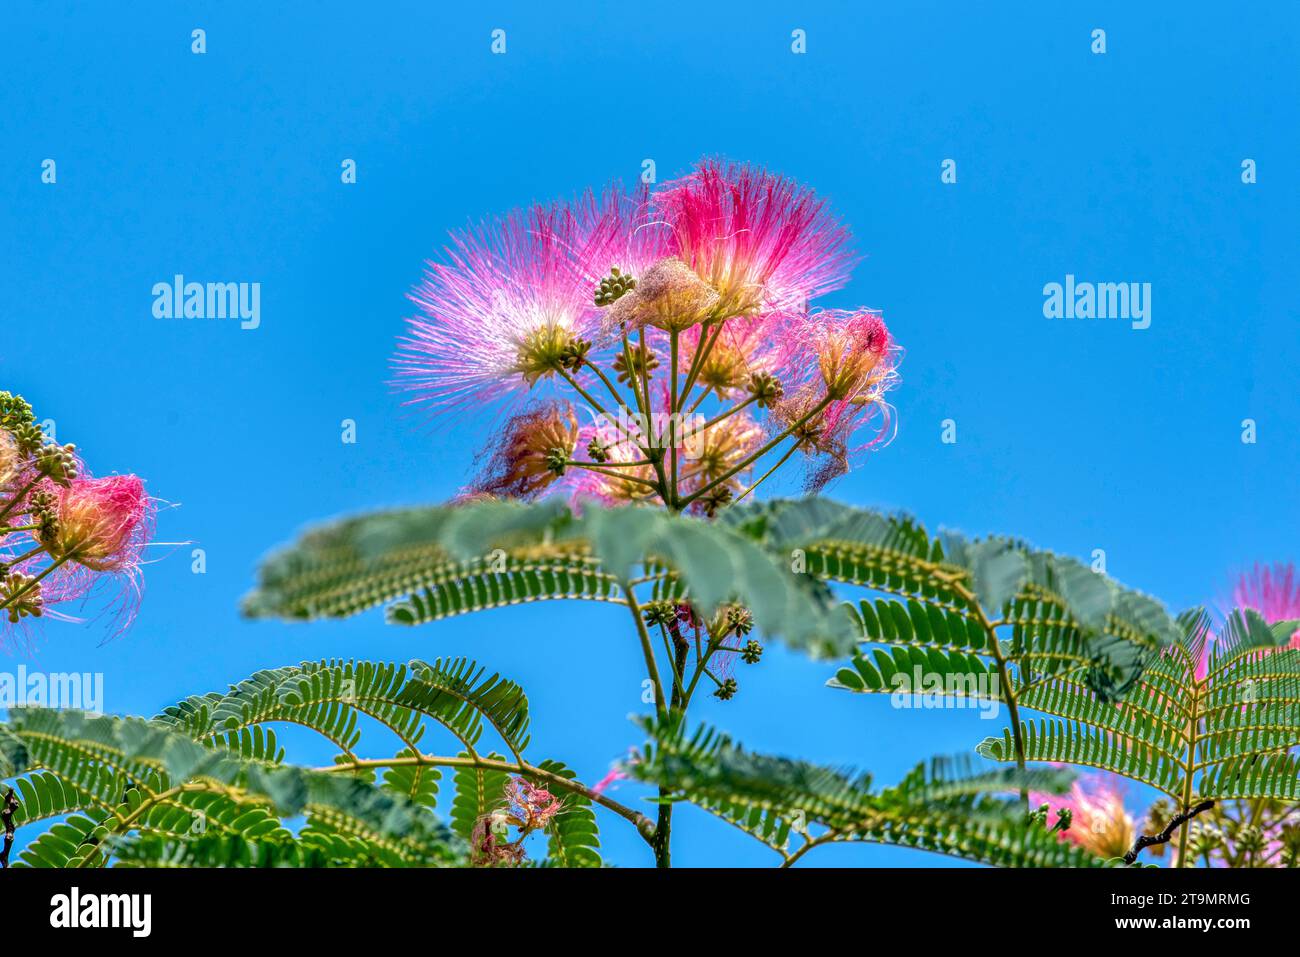 Rosa flauschige Blüten des persischen Seidenbaums (Albizia julibrissin). Japanische Akazie oder rosa Seidenbaum aus der Familie der Fabaceae. Natürlicher Hintergrund und t Stockfoto